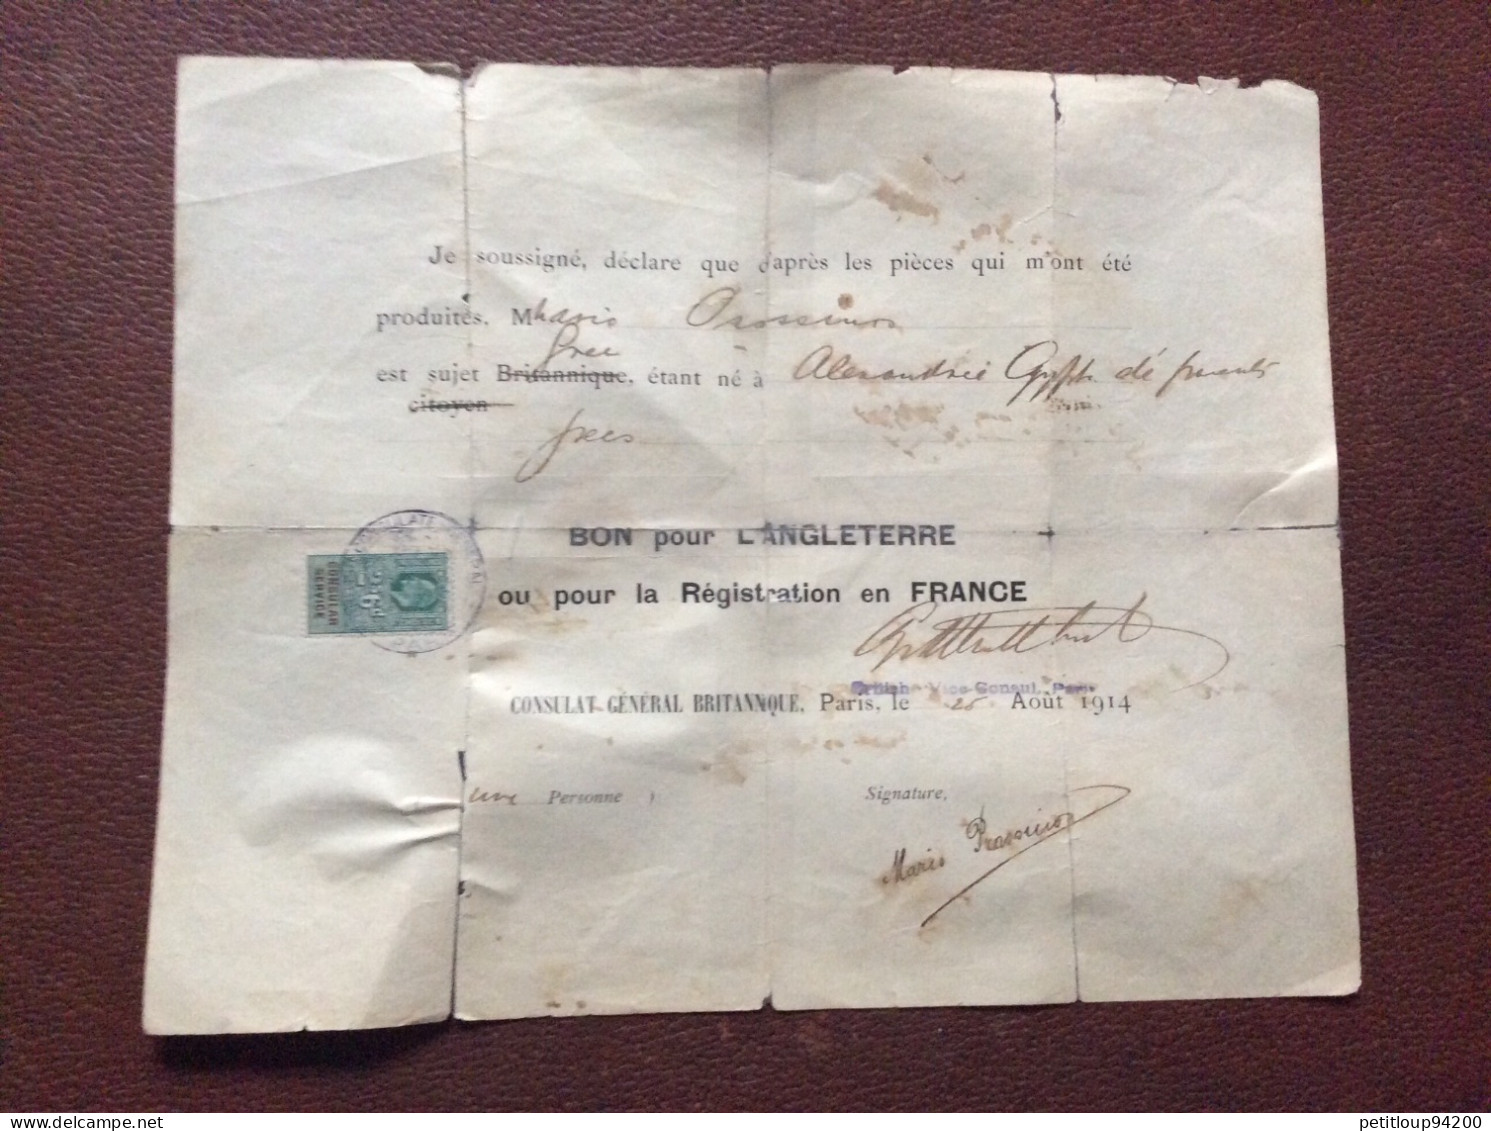 TIMBRE FISCAL SUR DOCUMENT Bon Pour L’ANGLETERRE  Registration En FRANCE  *2s 6d  CONSULAT GENERAL BRITANIQUE  1914 - Revenue Stamps